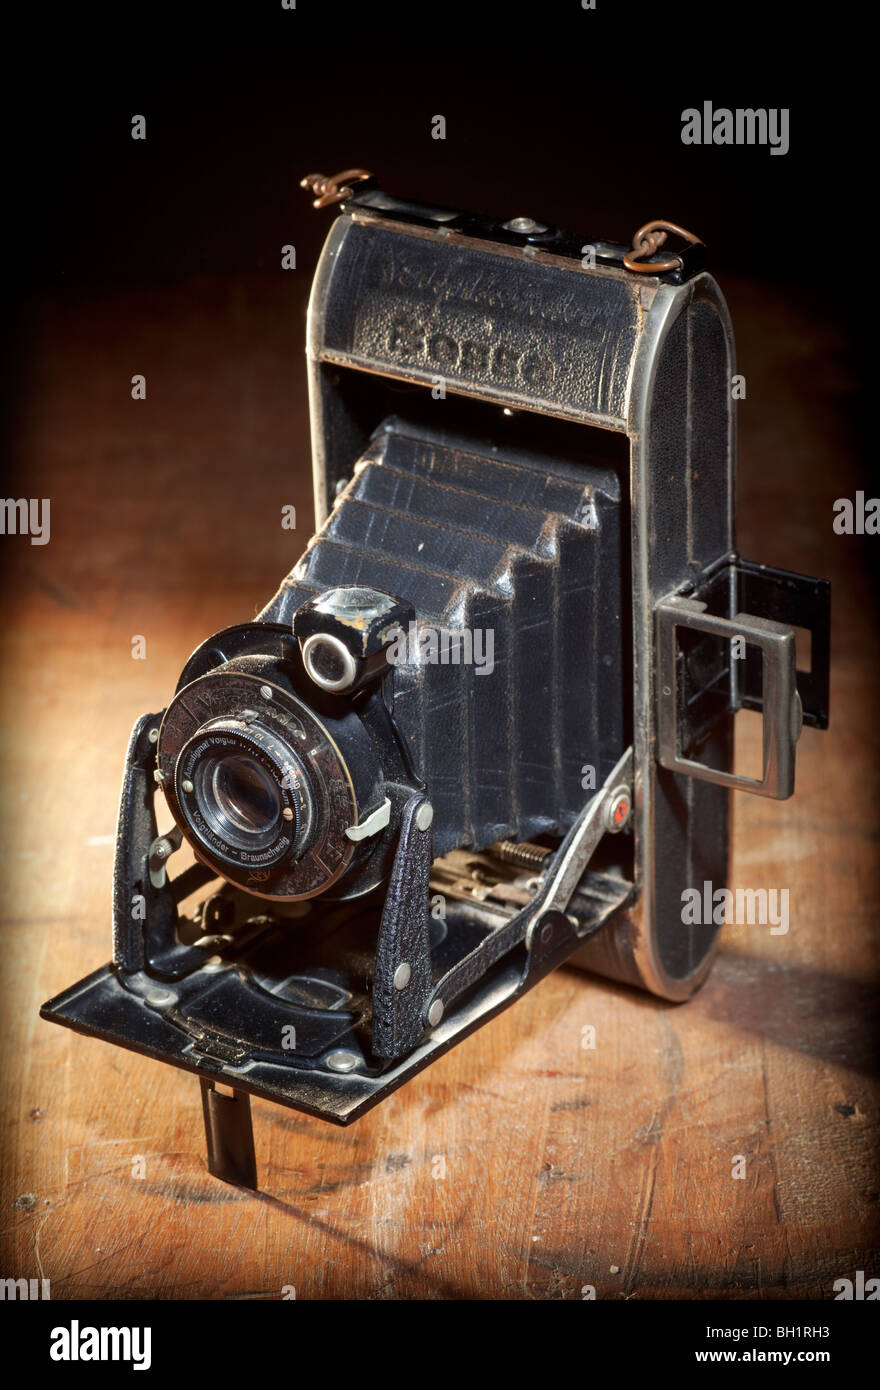 Voigtlander bessa camera -Fotos und -Bildmaterial in hoher Auflösung – Alamy